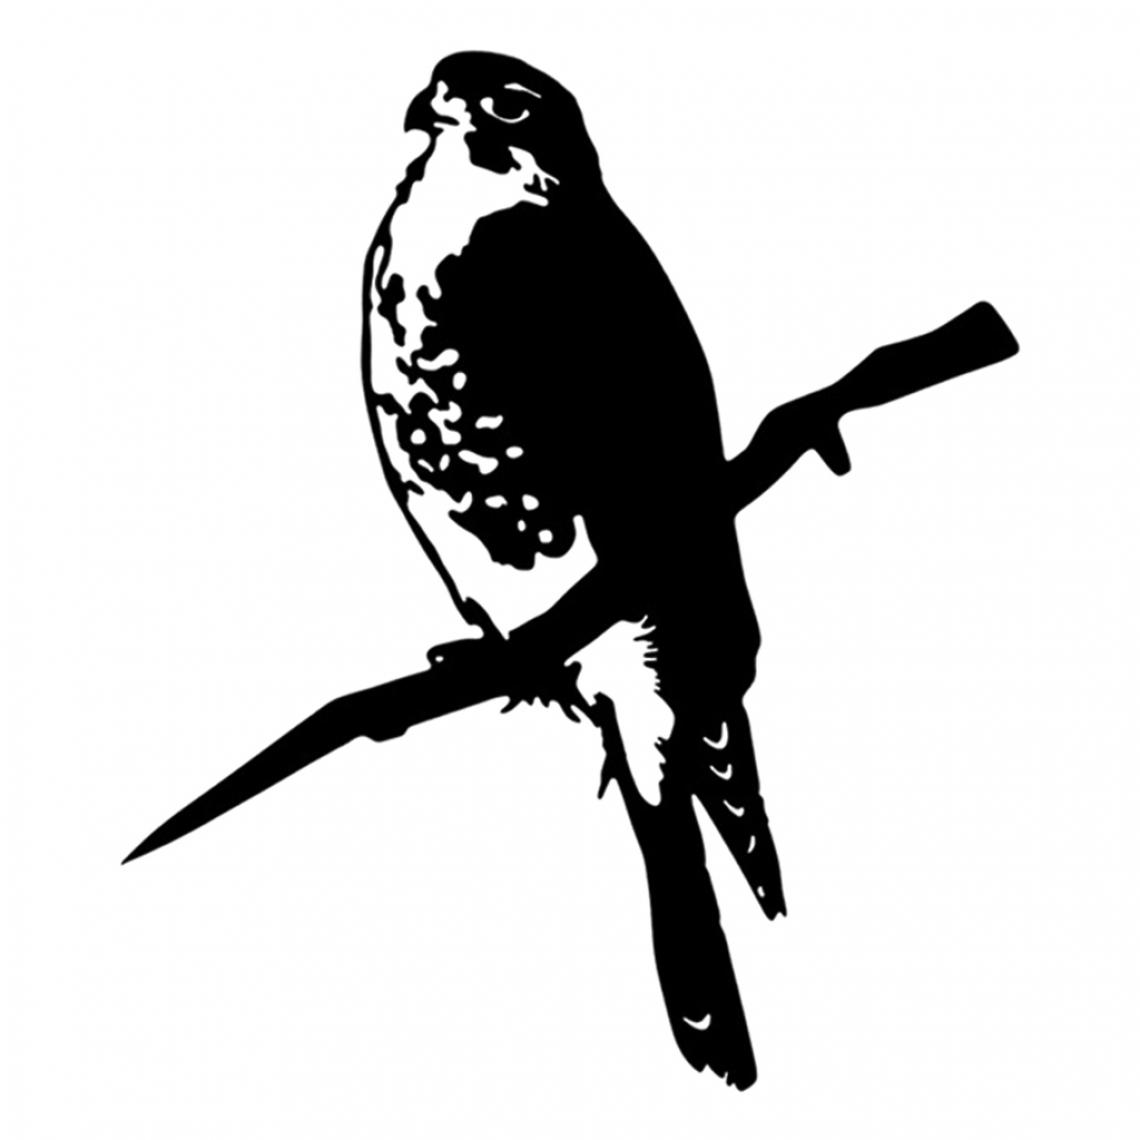 marque generique - Ornement De Silhouette D'oiseau En Métal Extérieur Sur Une Branche D'arbre Décor De Jardin Oiseau G - Petite déco d'exterieur